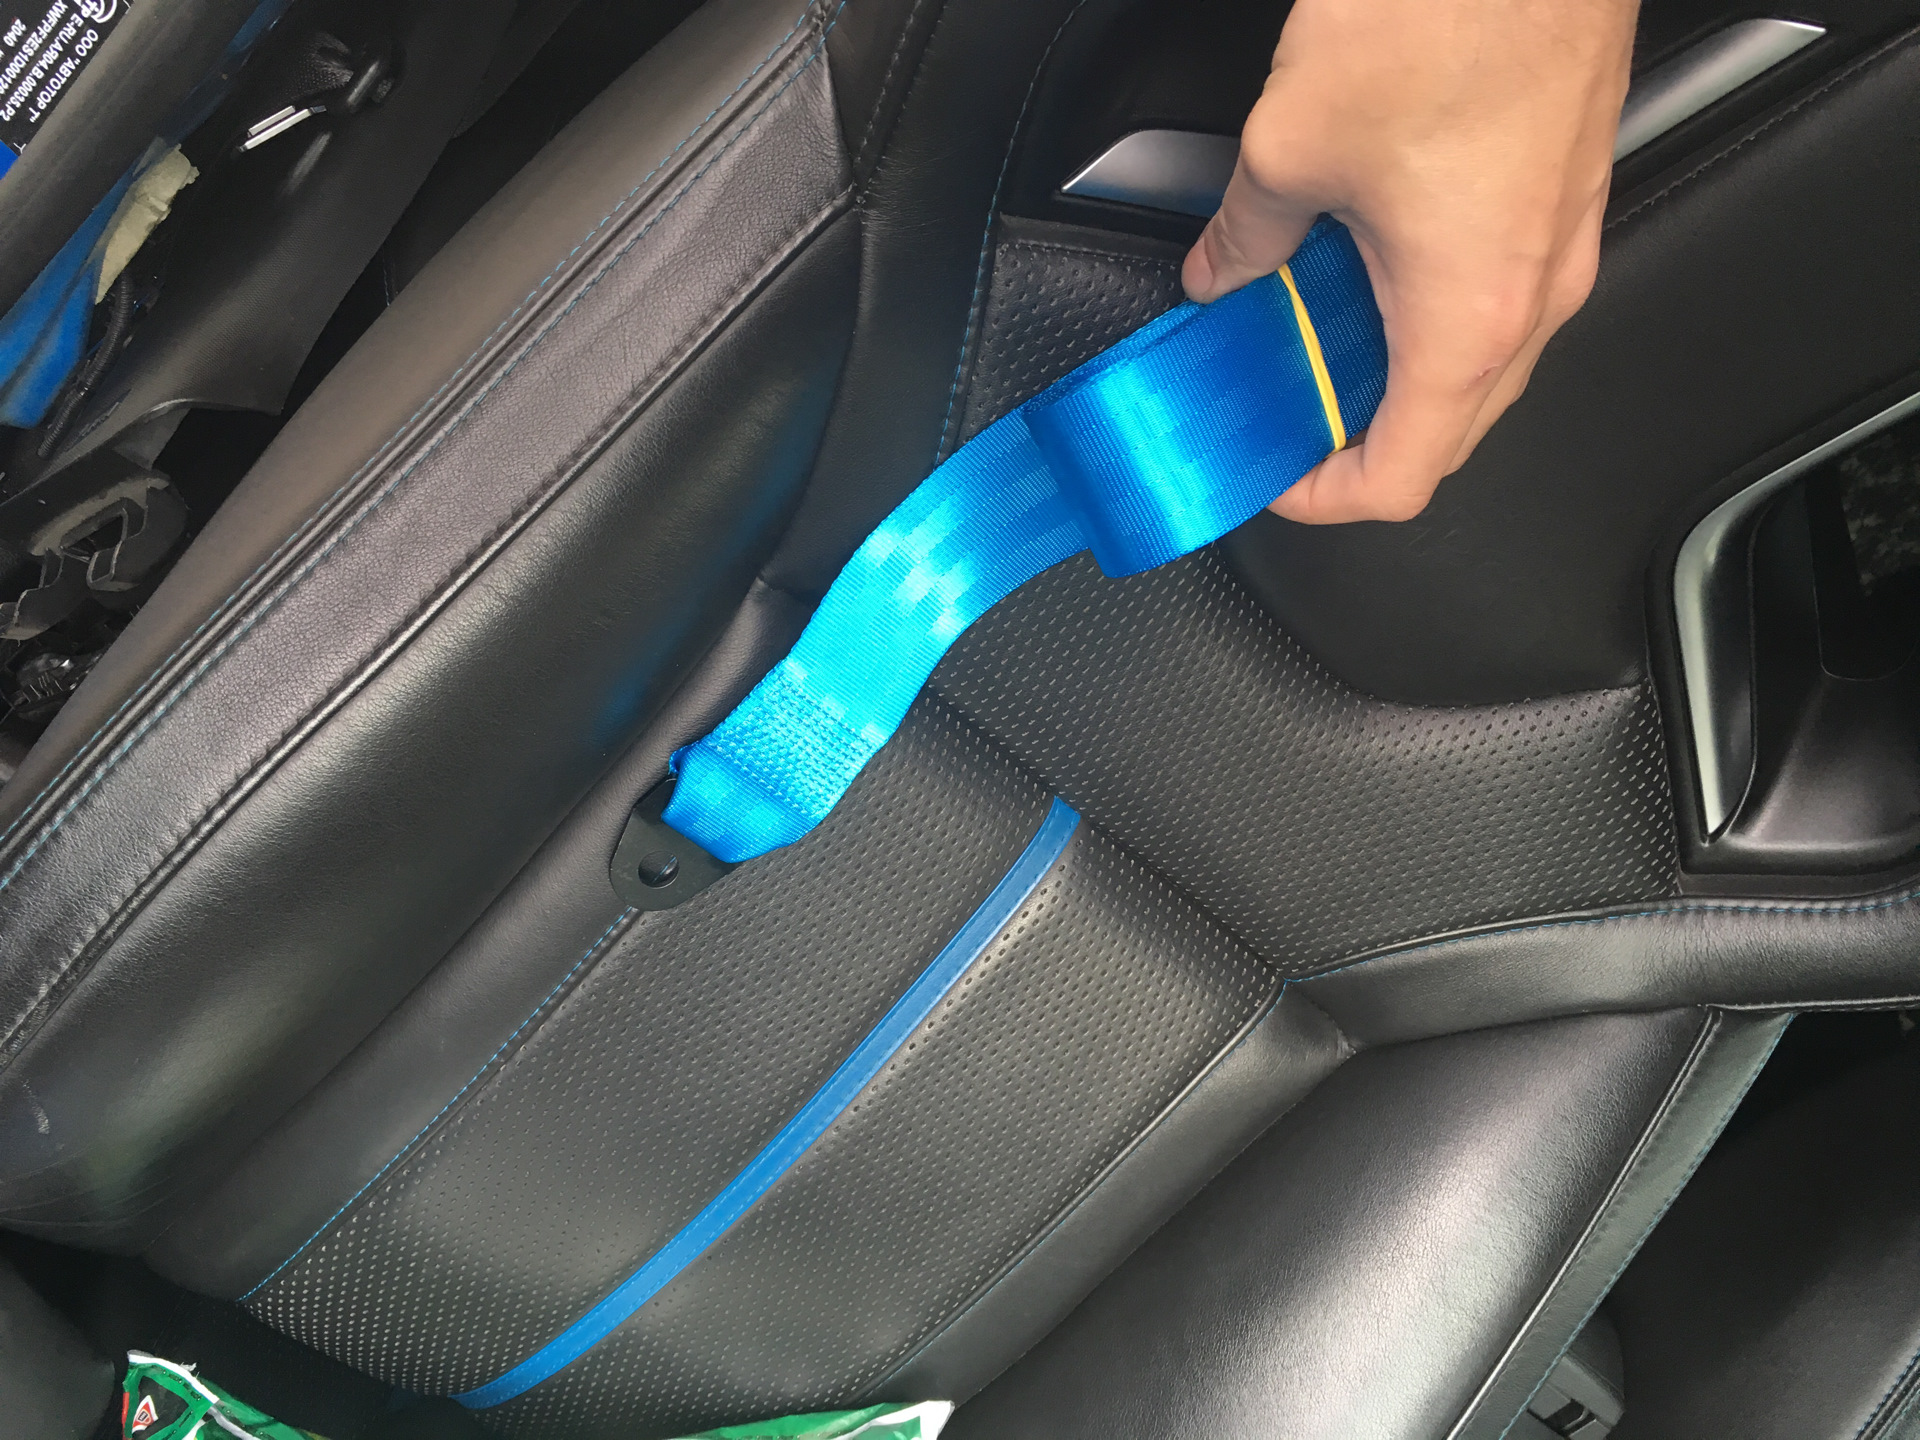 Цветной ремень безопасности. BMW g20 ремни безопасности синие. Разноцветные ремни безопасности. Синие ремни безопасности в салоне. Цветные ремни безопасности в авто.